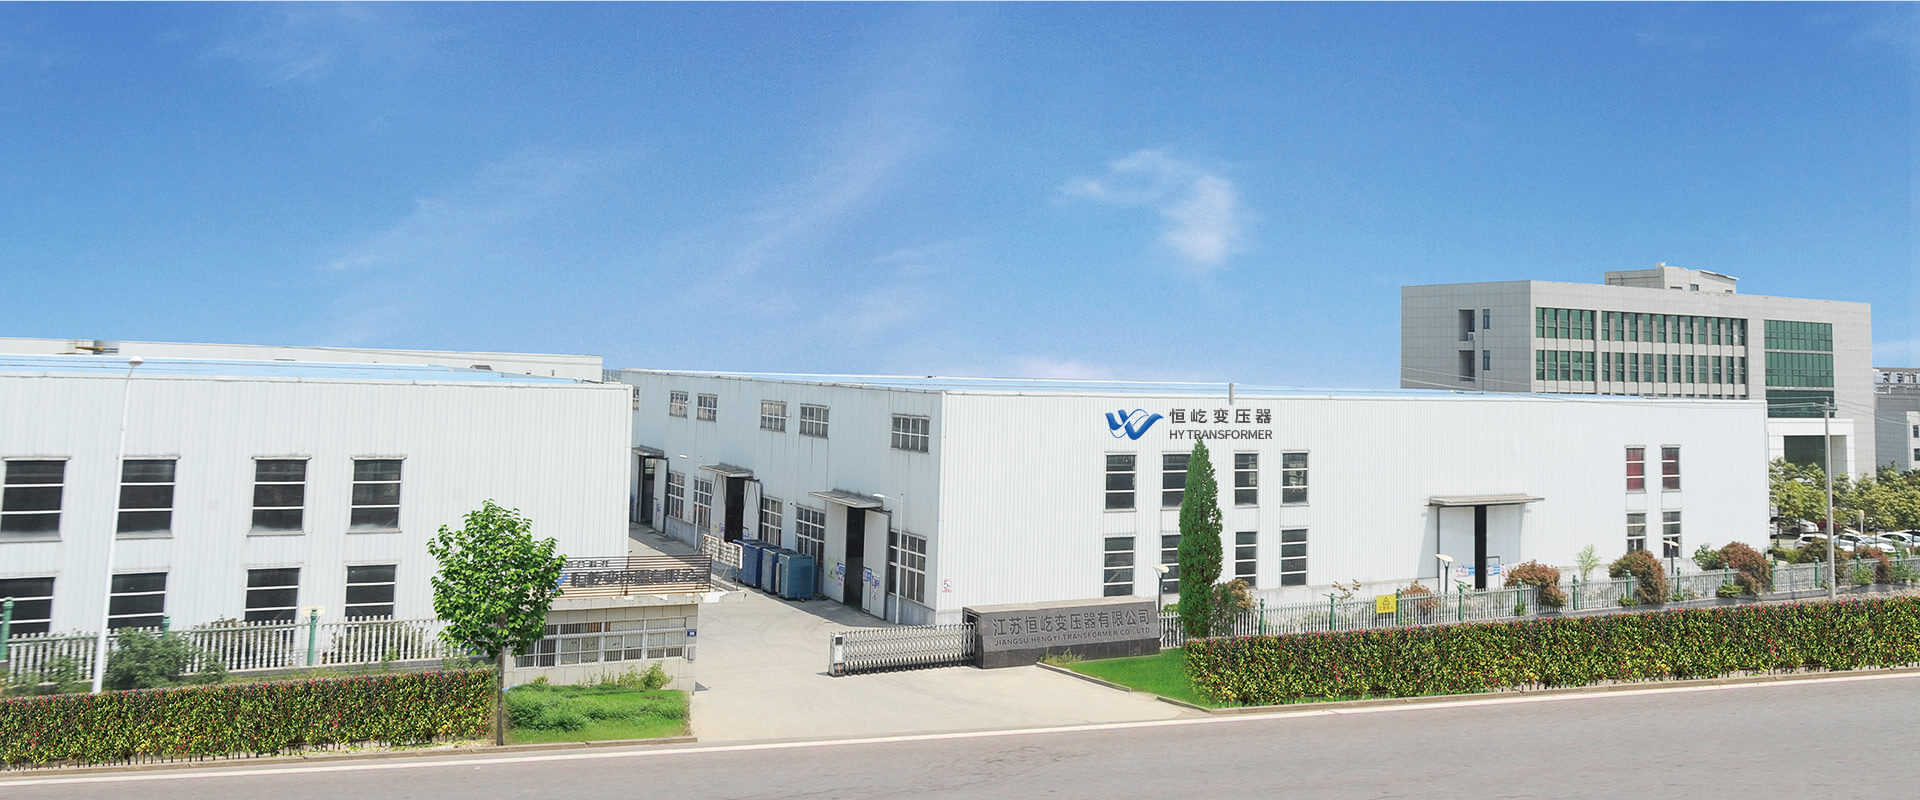 Jiangsu Hengyi Transformer Co., Ltd.